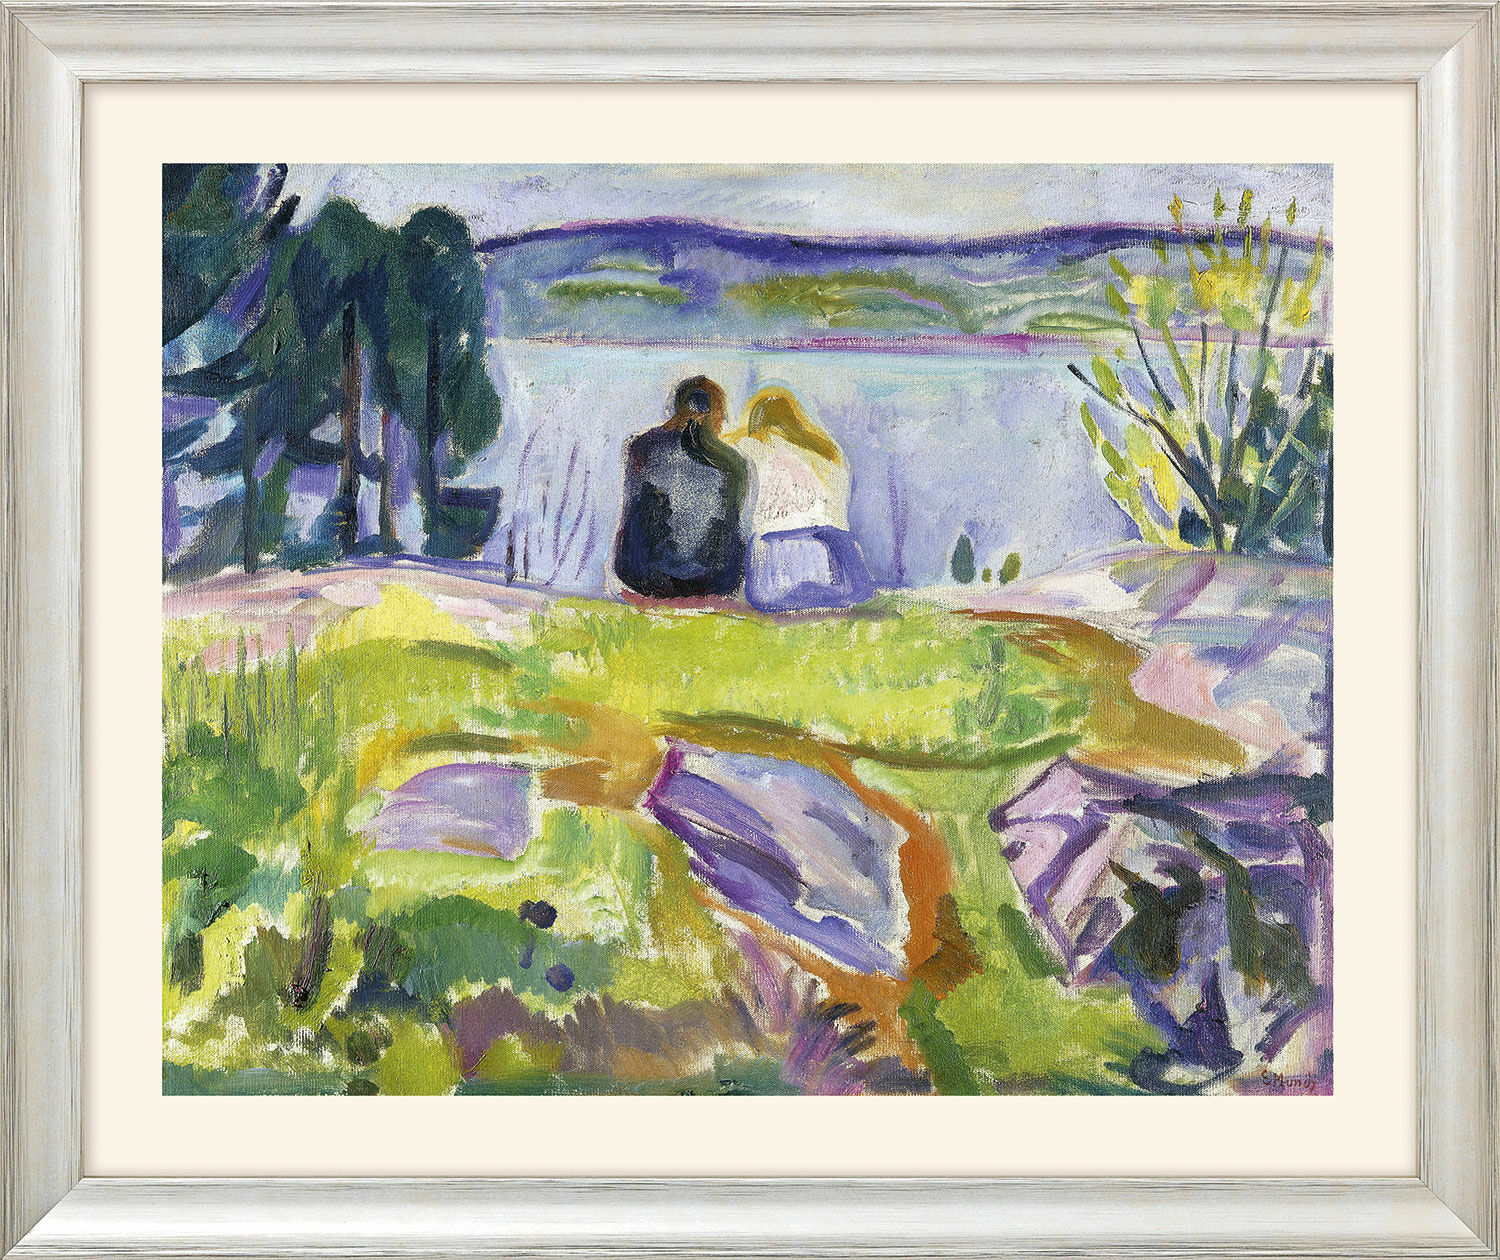 Bild "Frühling (Liebespaar am Ufer)" (1911-13) - aus "Jahreszeiten-Zyklus", Version silberfarben gerahmt von Edvard Munch